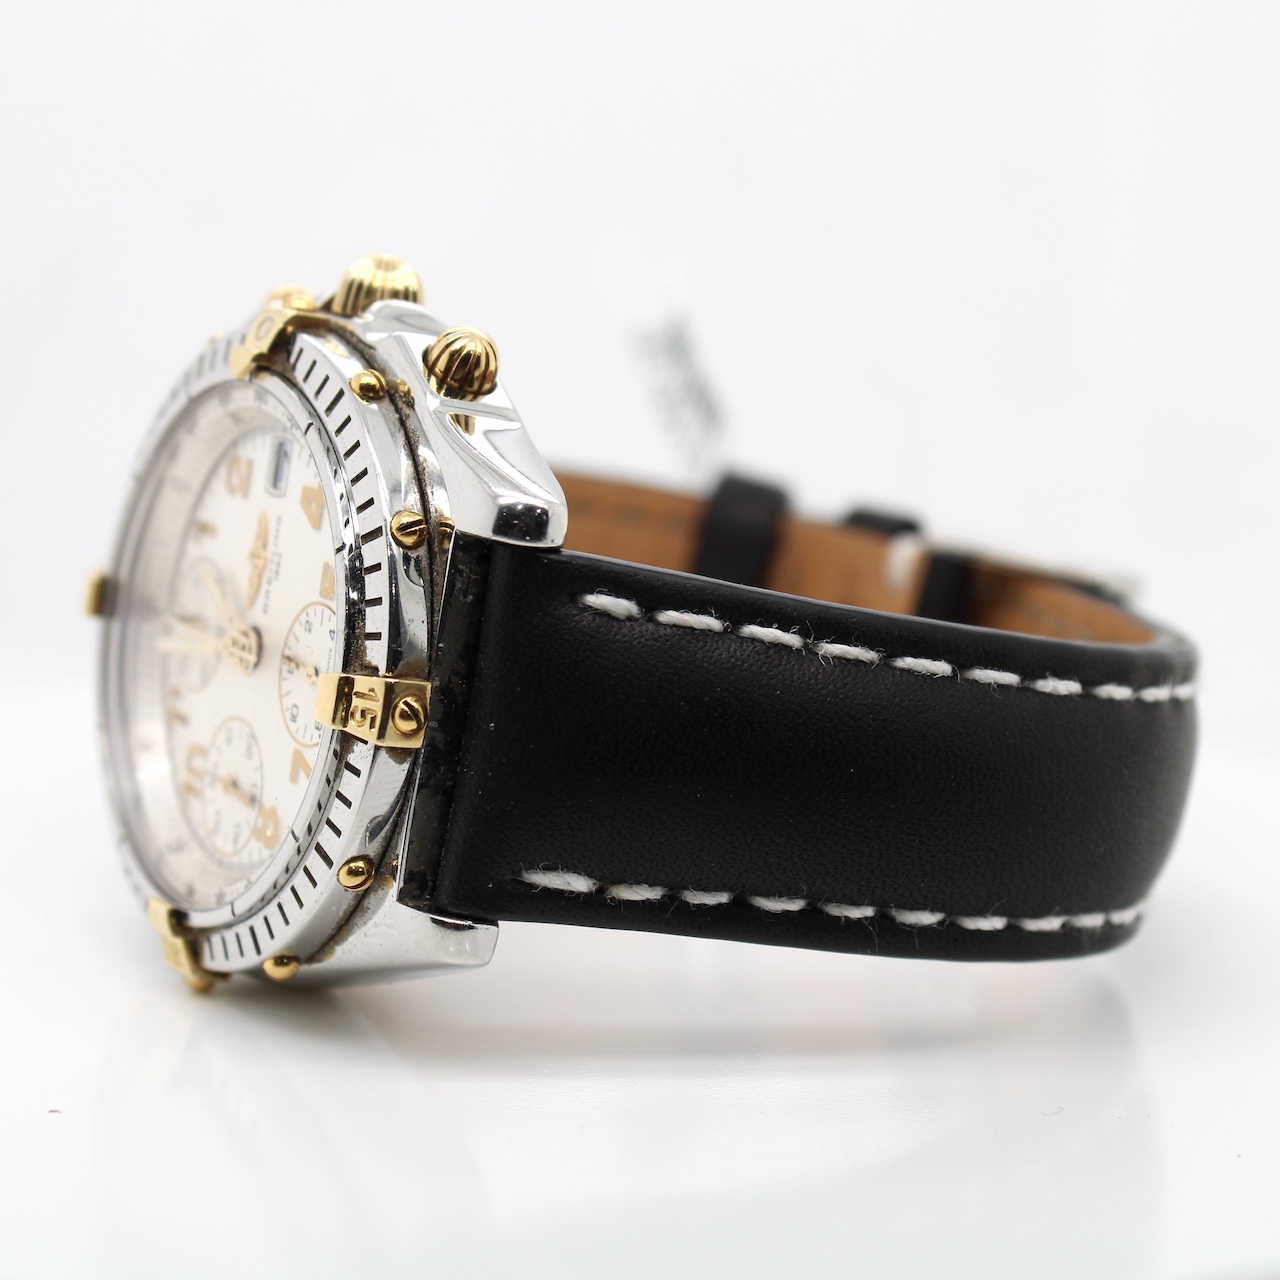 Breitling Chronometer Ref B13050.1 - Image 2 of 4